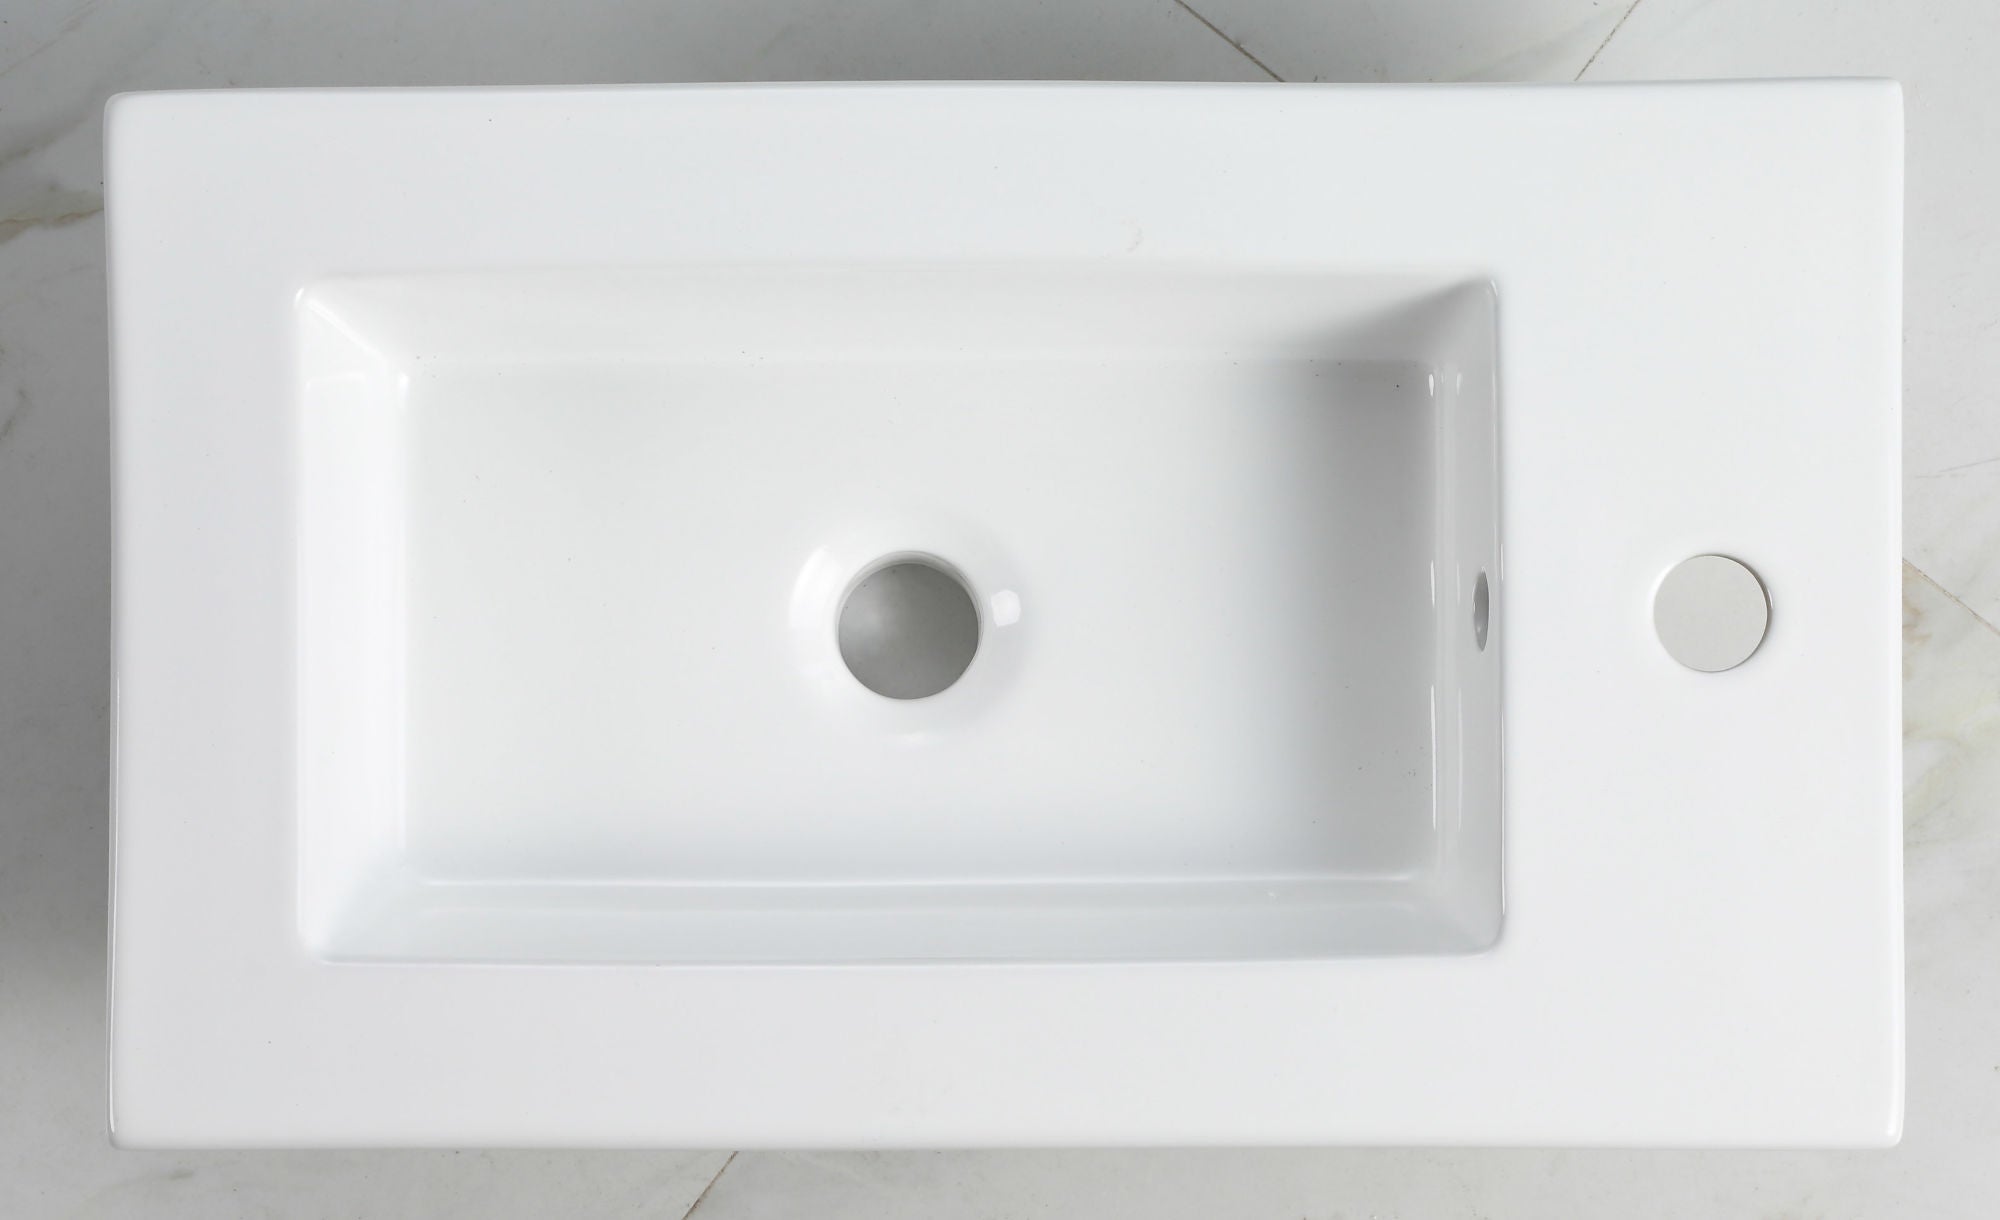 Bathroom Vanity Ceramic Top